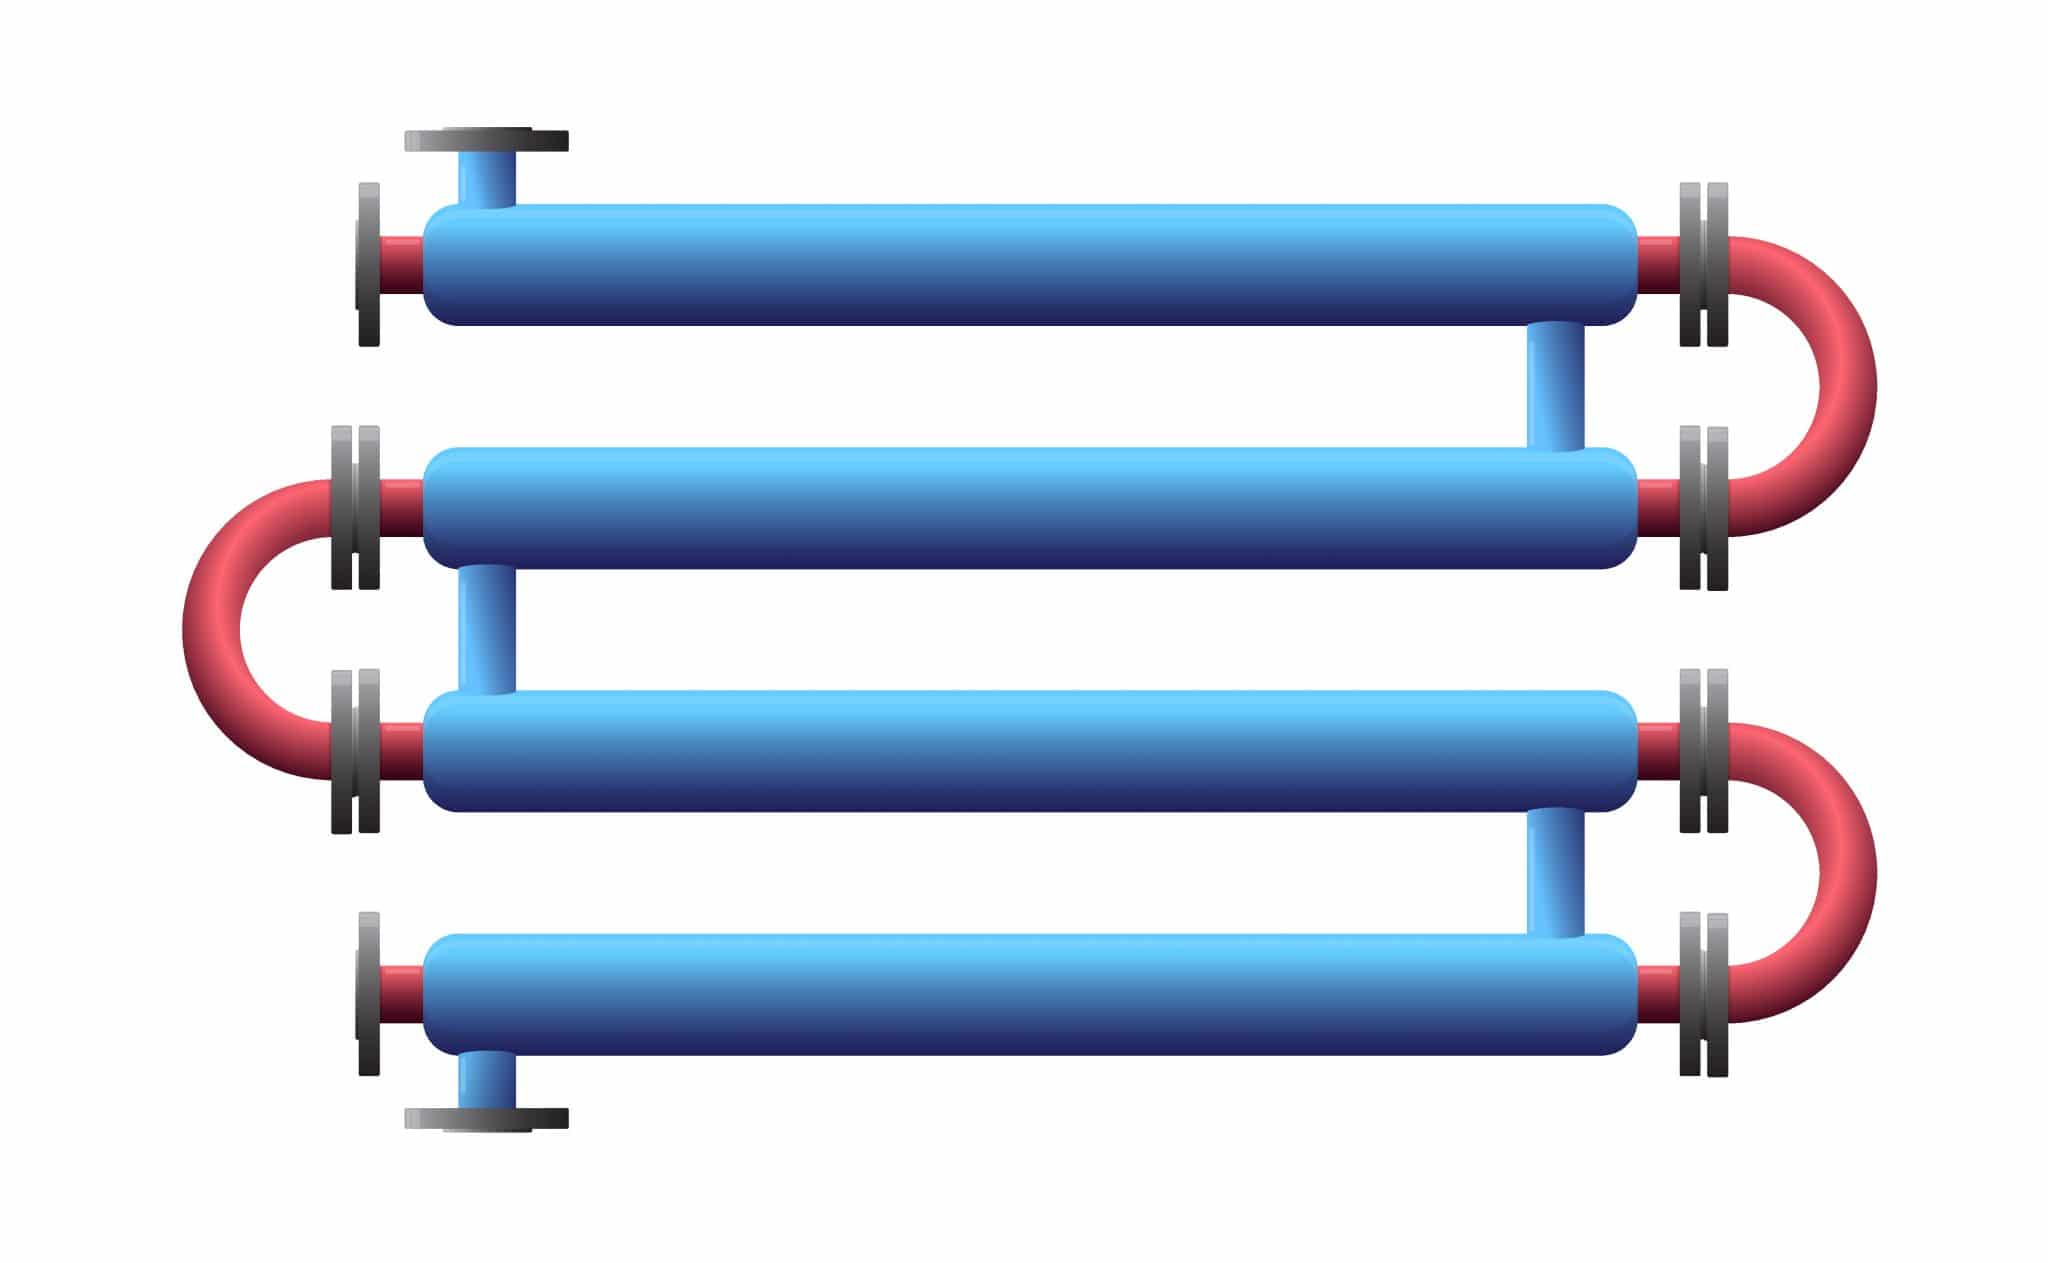 Double Pipe Heat Exchanger